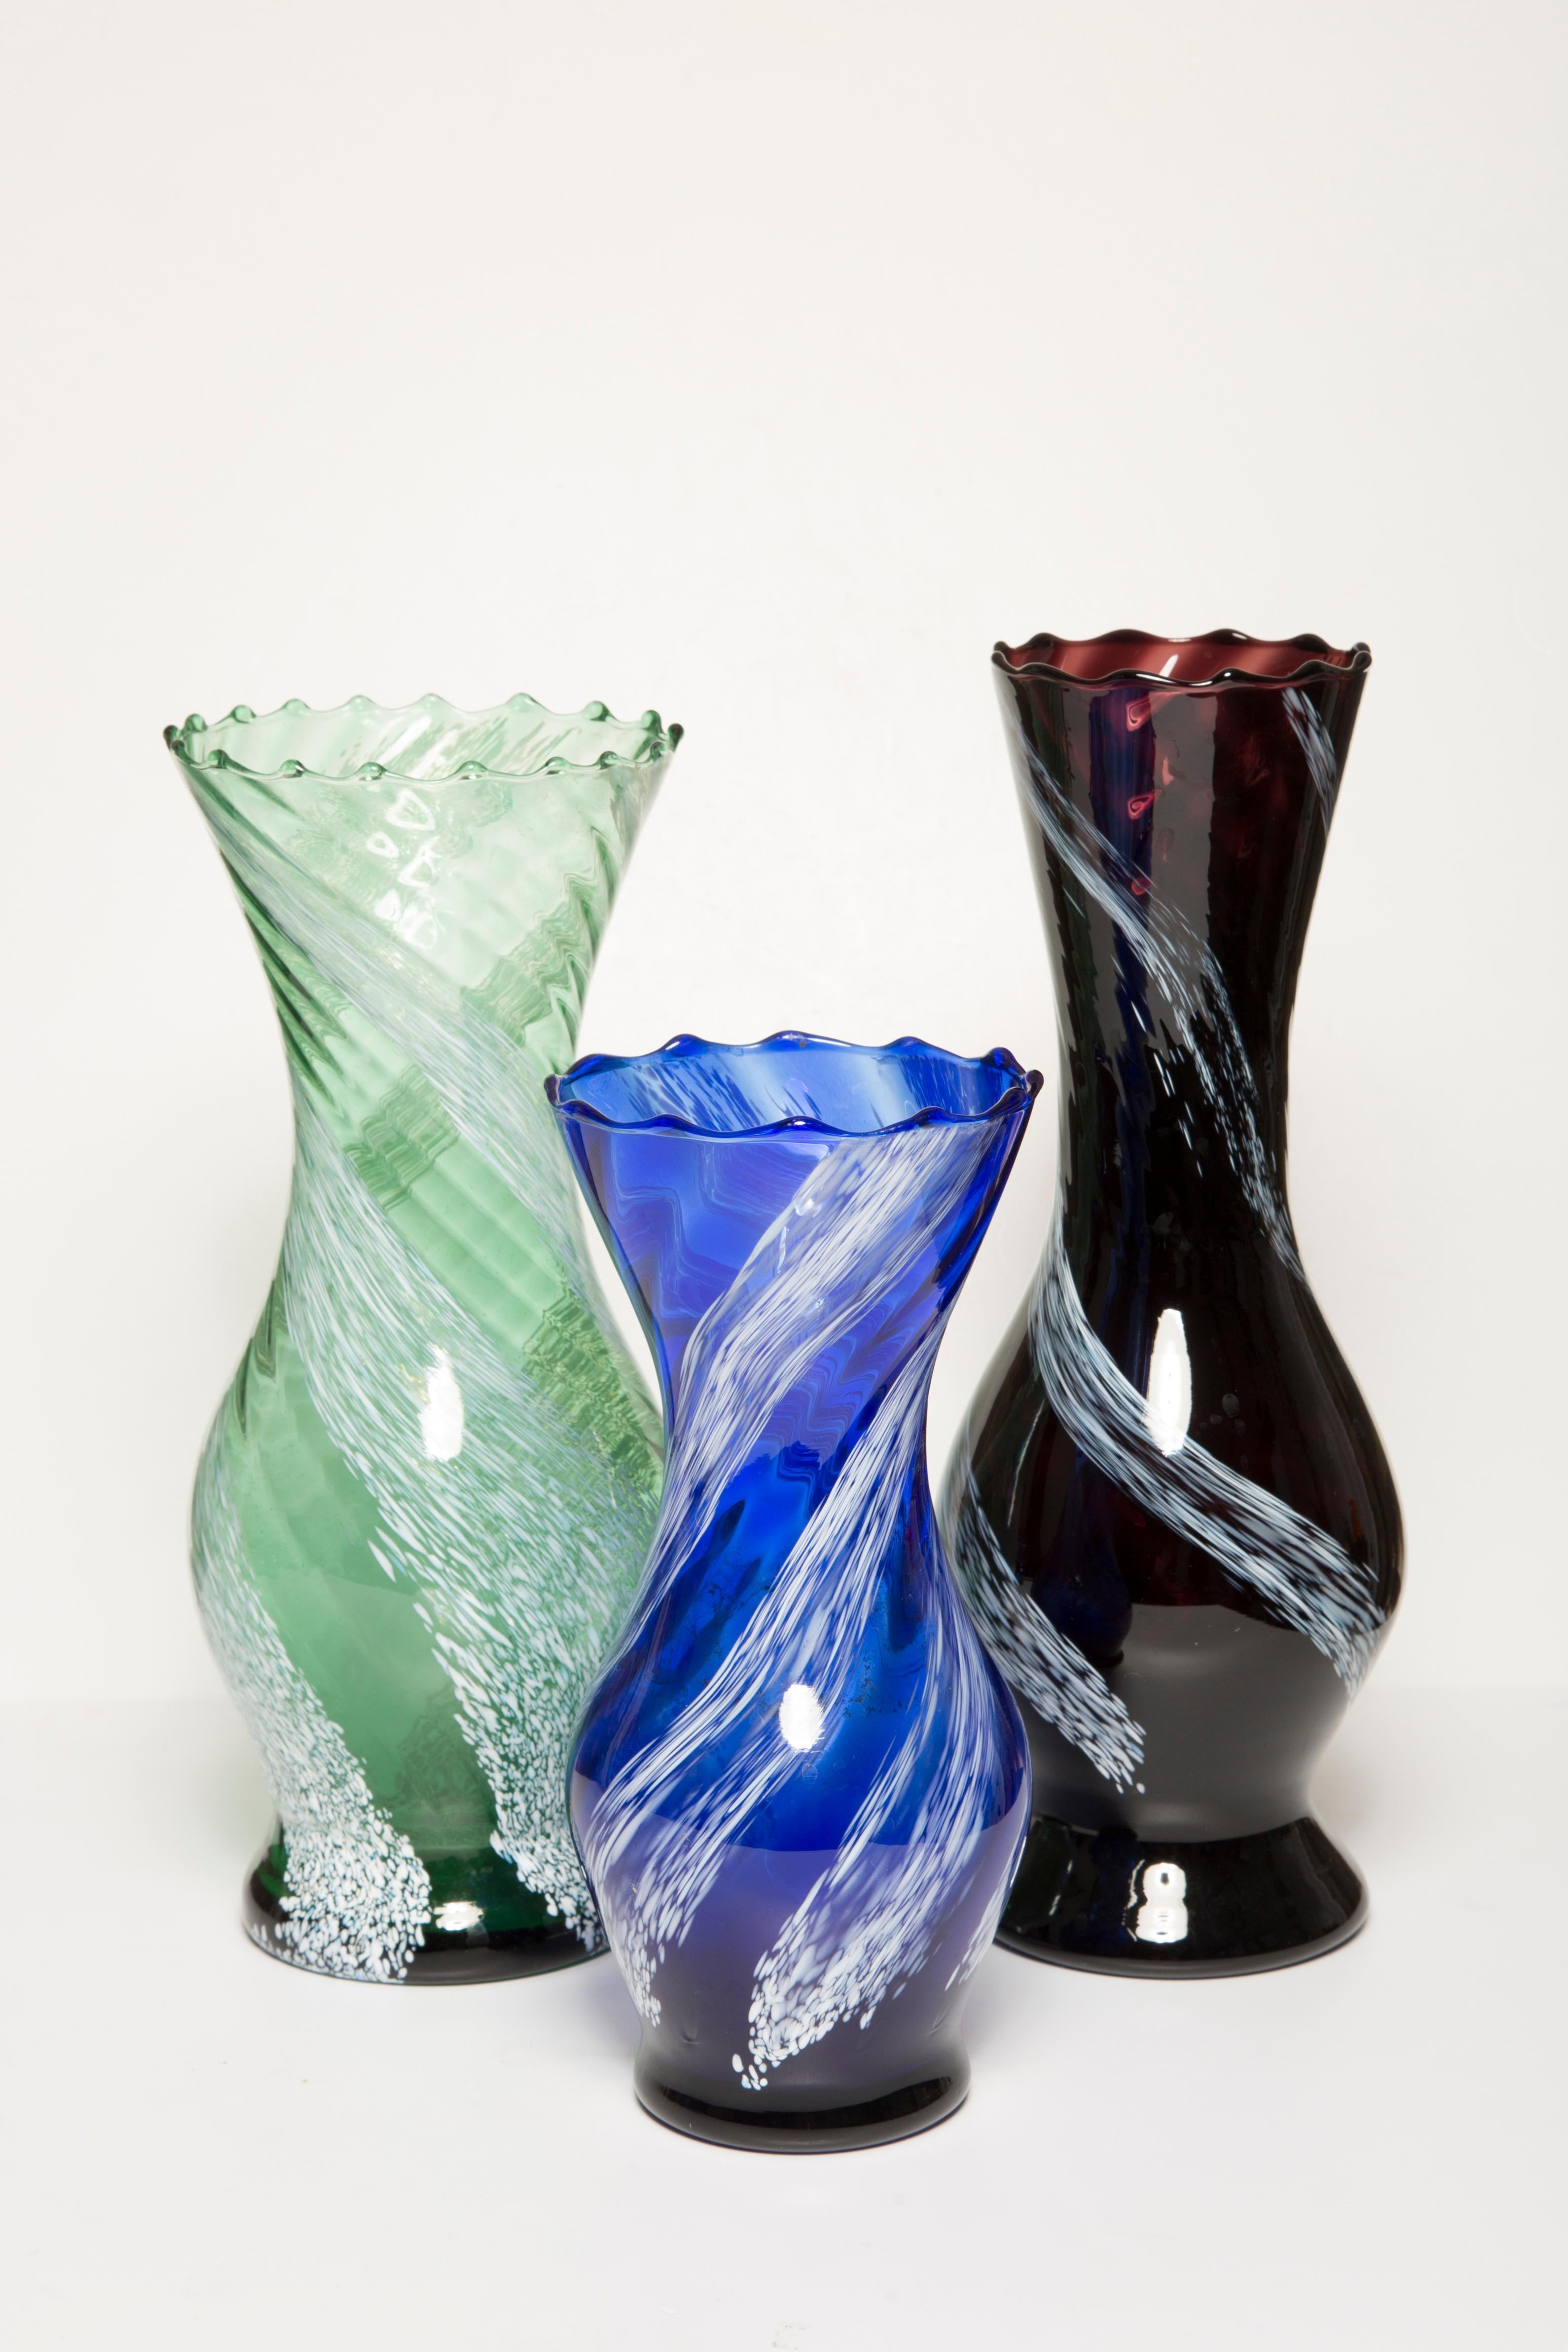 Ensemble de trois vases aux formes organiques étonnantes. 
Produit dans les années 1960. Verre en parfait état. 
Le vase a l'air d'avoir été sorti de sa boîte.

Pas d'éclats, de défauts, etc.etc. La surface extérieure en relief, l'intérieur lisse.